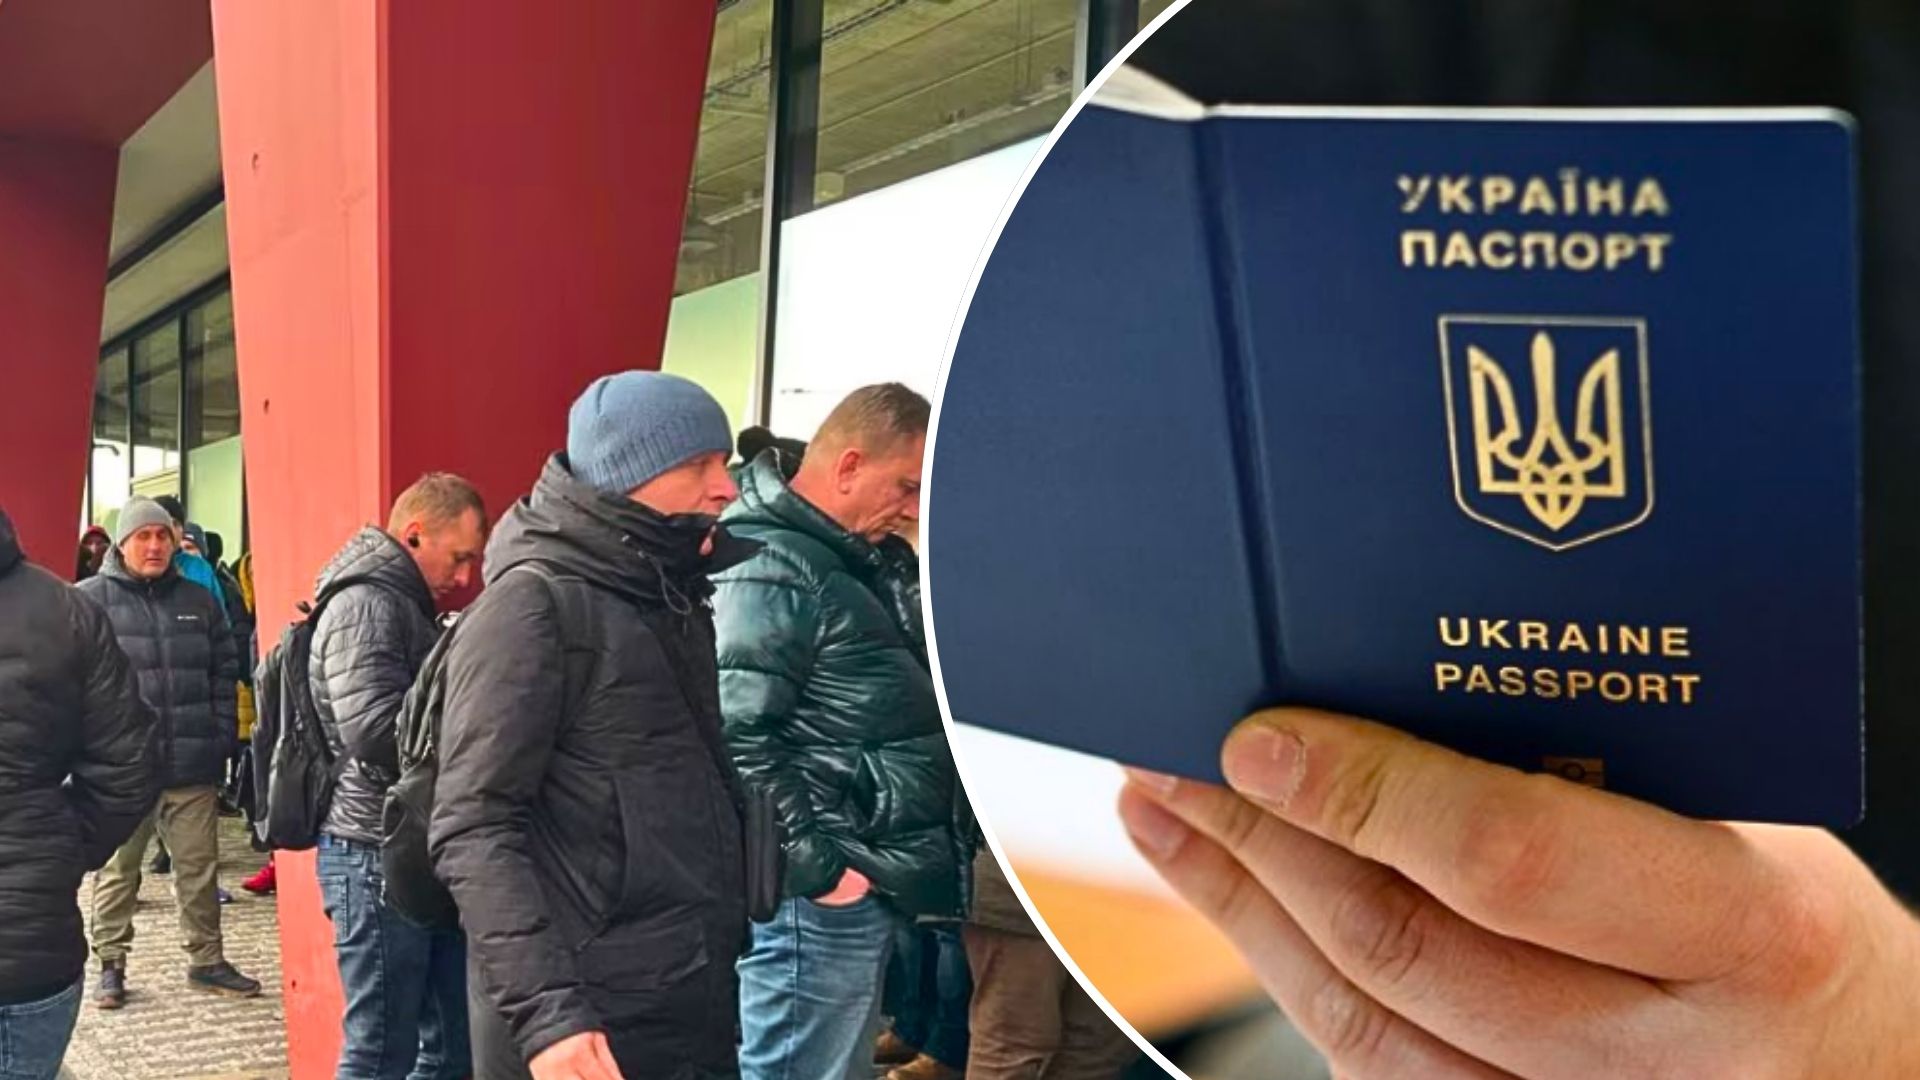 Министерство иностранных дел Украины якобы временно приостановило консульские услуги для граждан мужского пола призывного возраста.